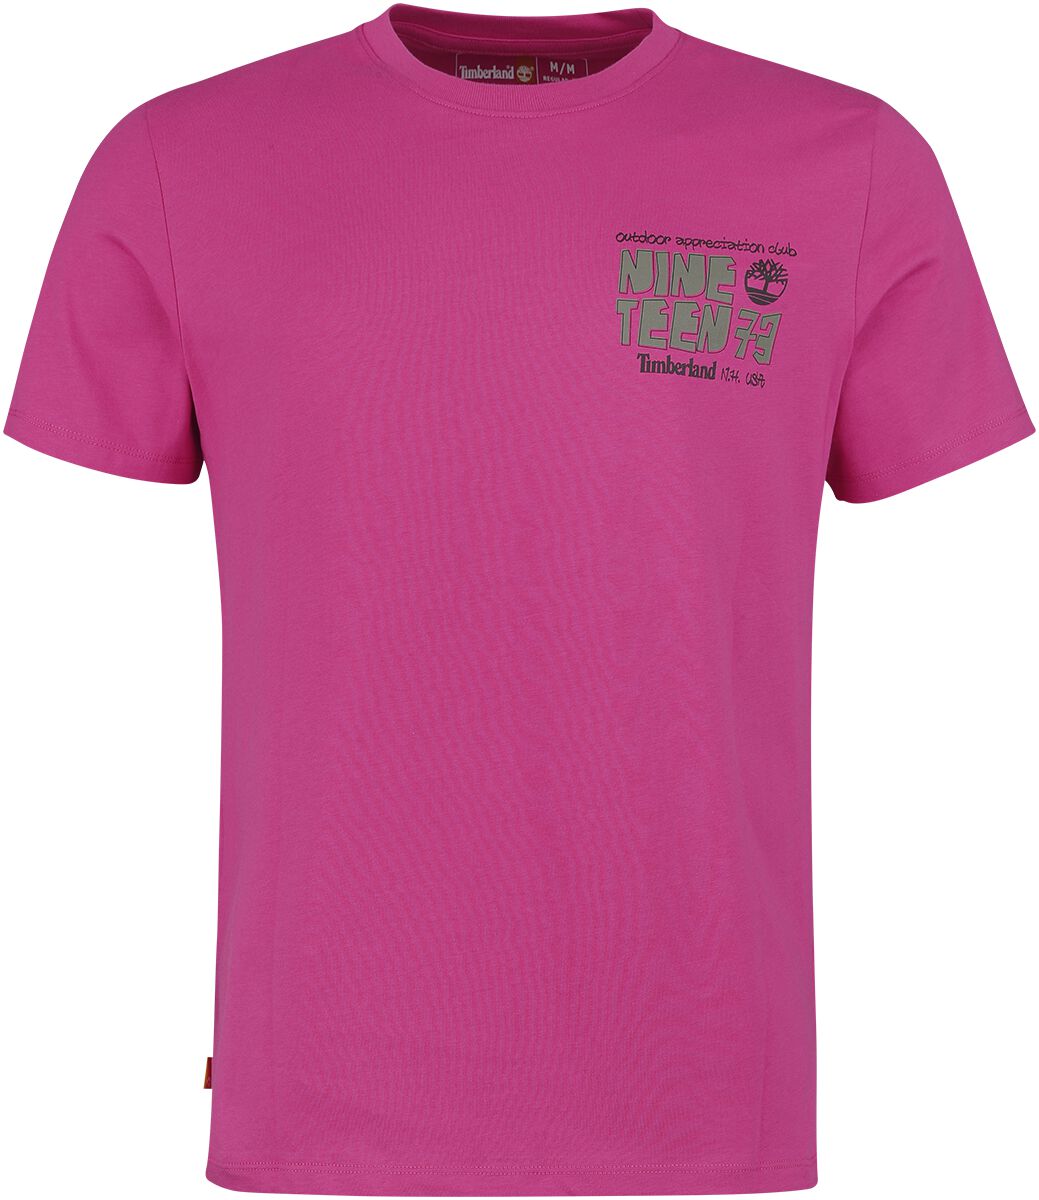 Timberland T-Shirt - Outdoor Back Graphic Tee - S bis L - für Männer - Größe M - pink